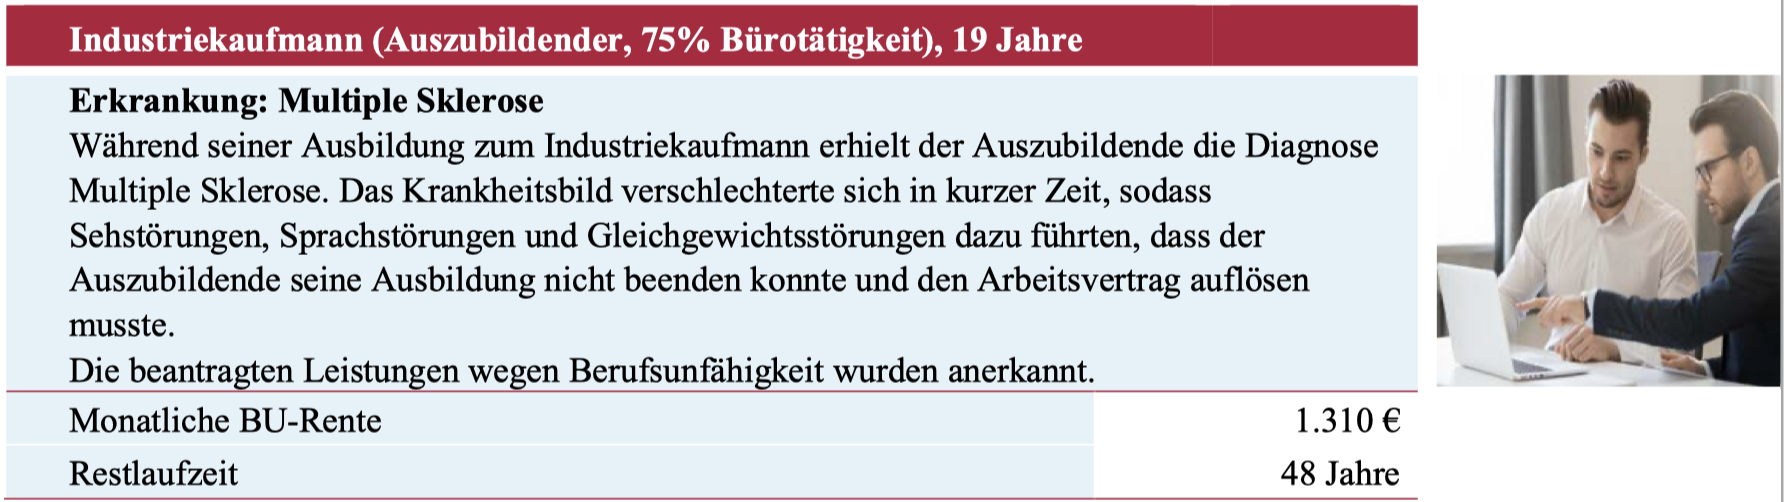 Leistungsbeispiel der Alte Leipziger: Industriekaufmann, 19 Jahre, Multiple Sklerose.